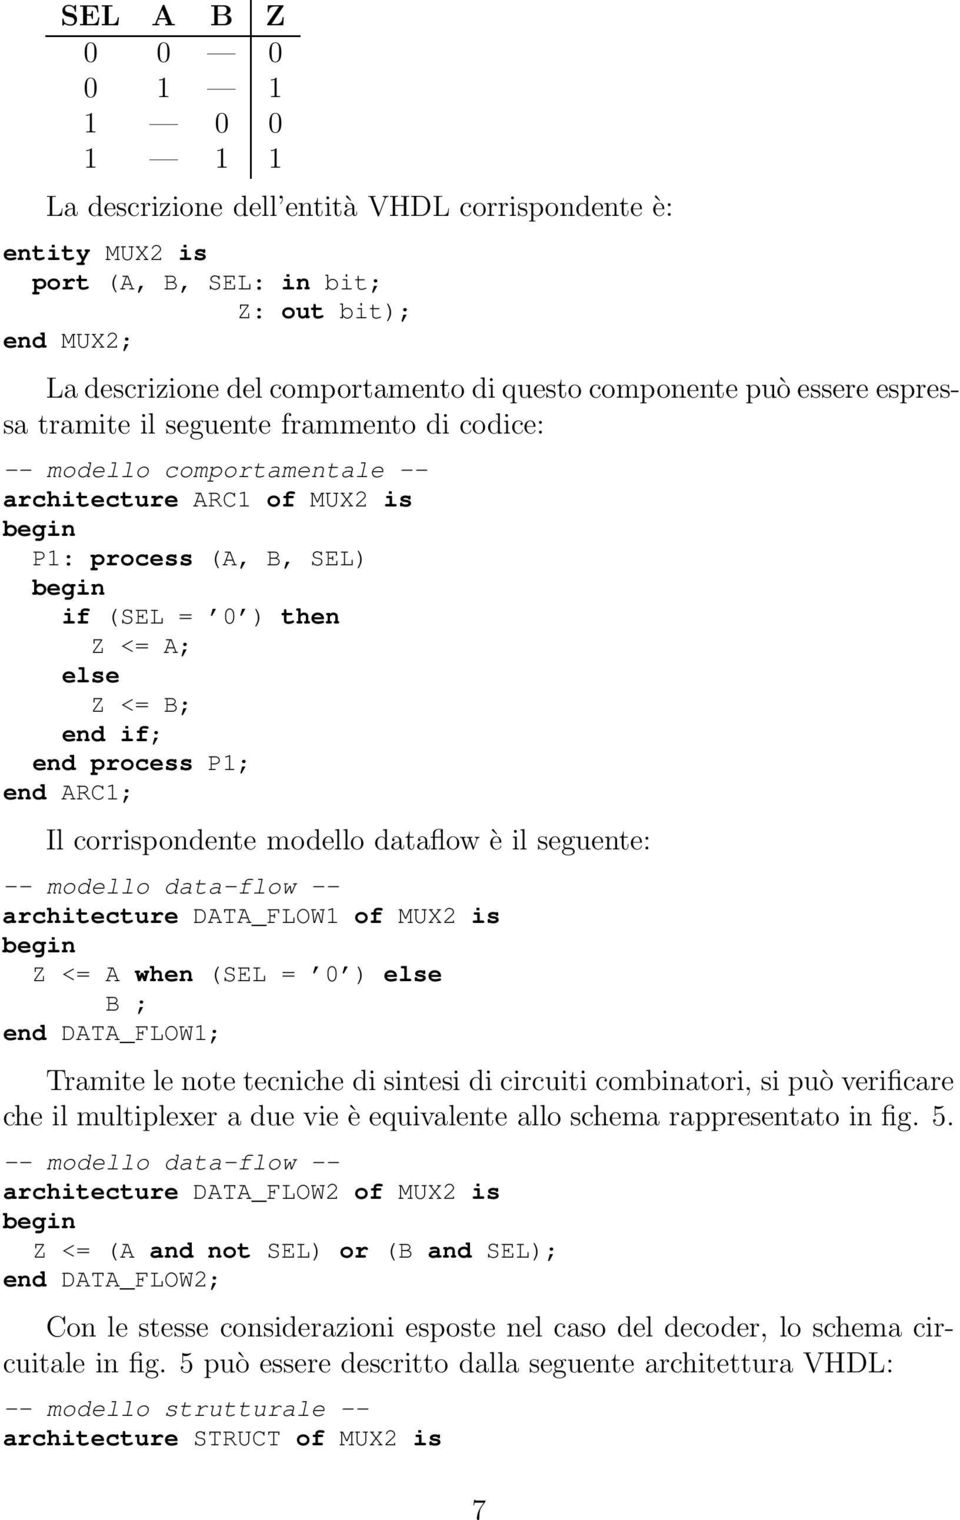 R1; Il corrispondente modello dataflow è il seguente: architecture DT_FLOW1 of MUX2 is <= when (SEL = 0 ) else ; end DT_FLOW1; Tramite le note tecniche di sintesi di circuiti combinatori, si può